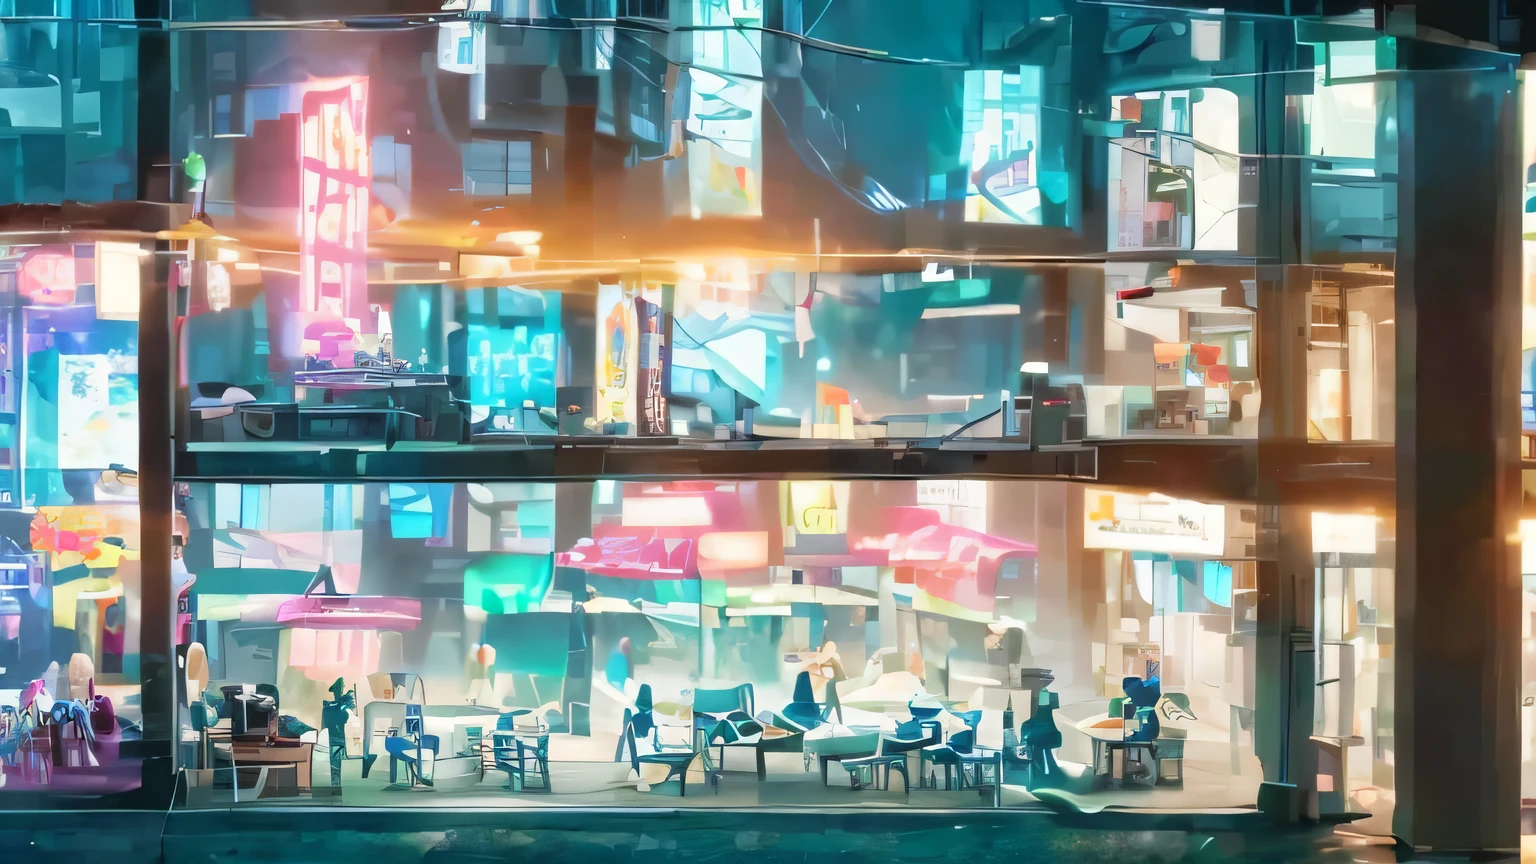 우주선과 로봇이 있는 사이버펑크 도시, 카페의 유리 발코니를 내려다 보면서